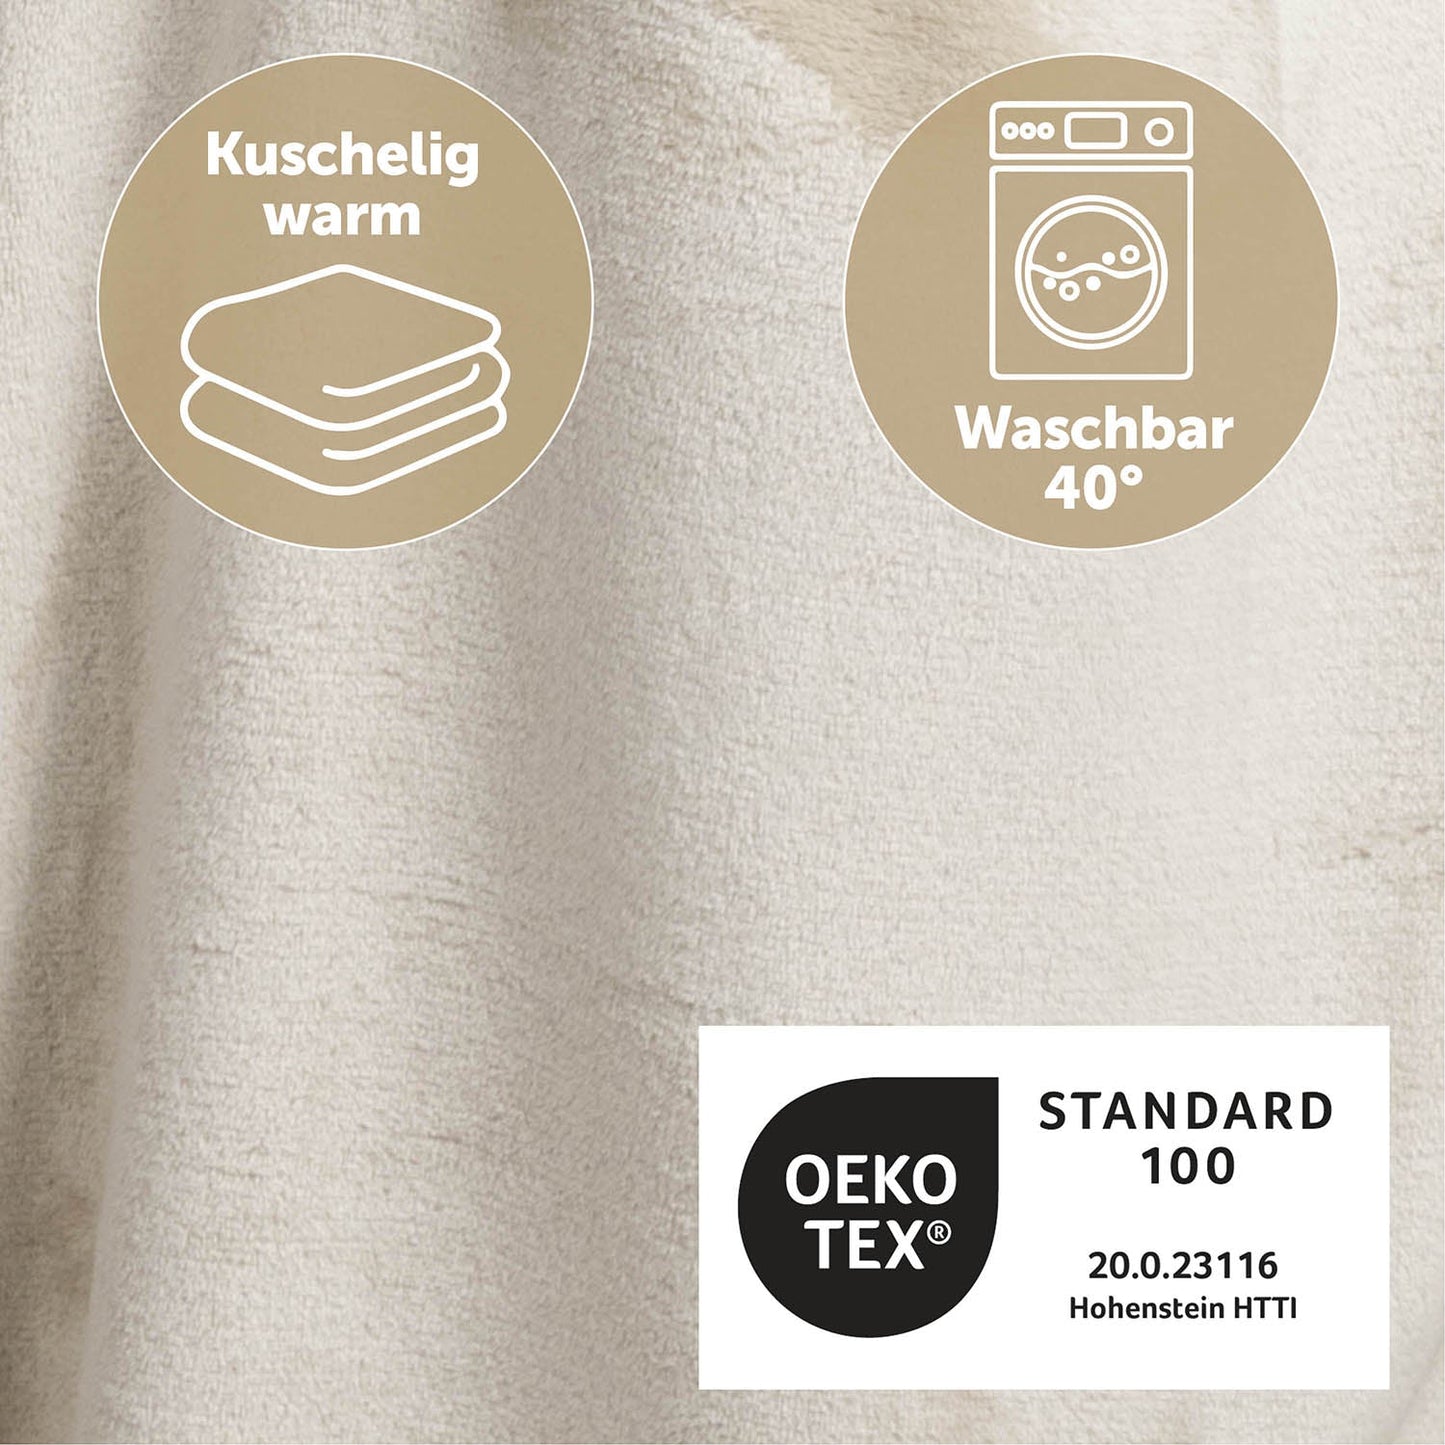 Detailansicht des beige flauschigen Stoffes mit Symbolen für Kuschelwärme und Waschbarkeit bei 40 Grad sowie OEKO-TEX Standard 100 Zertifizierung.